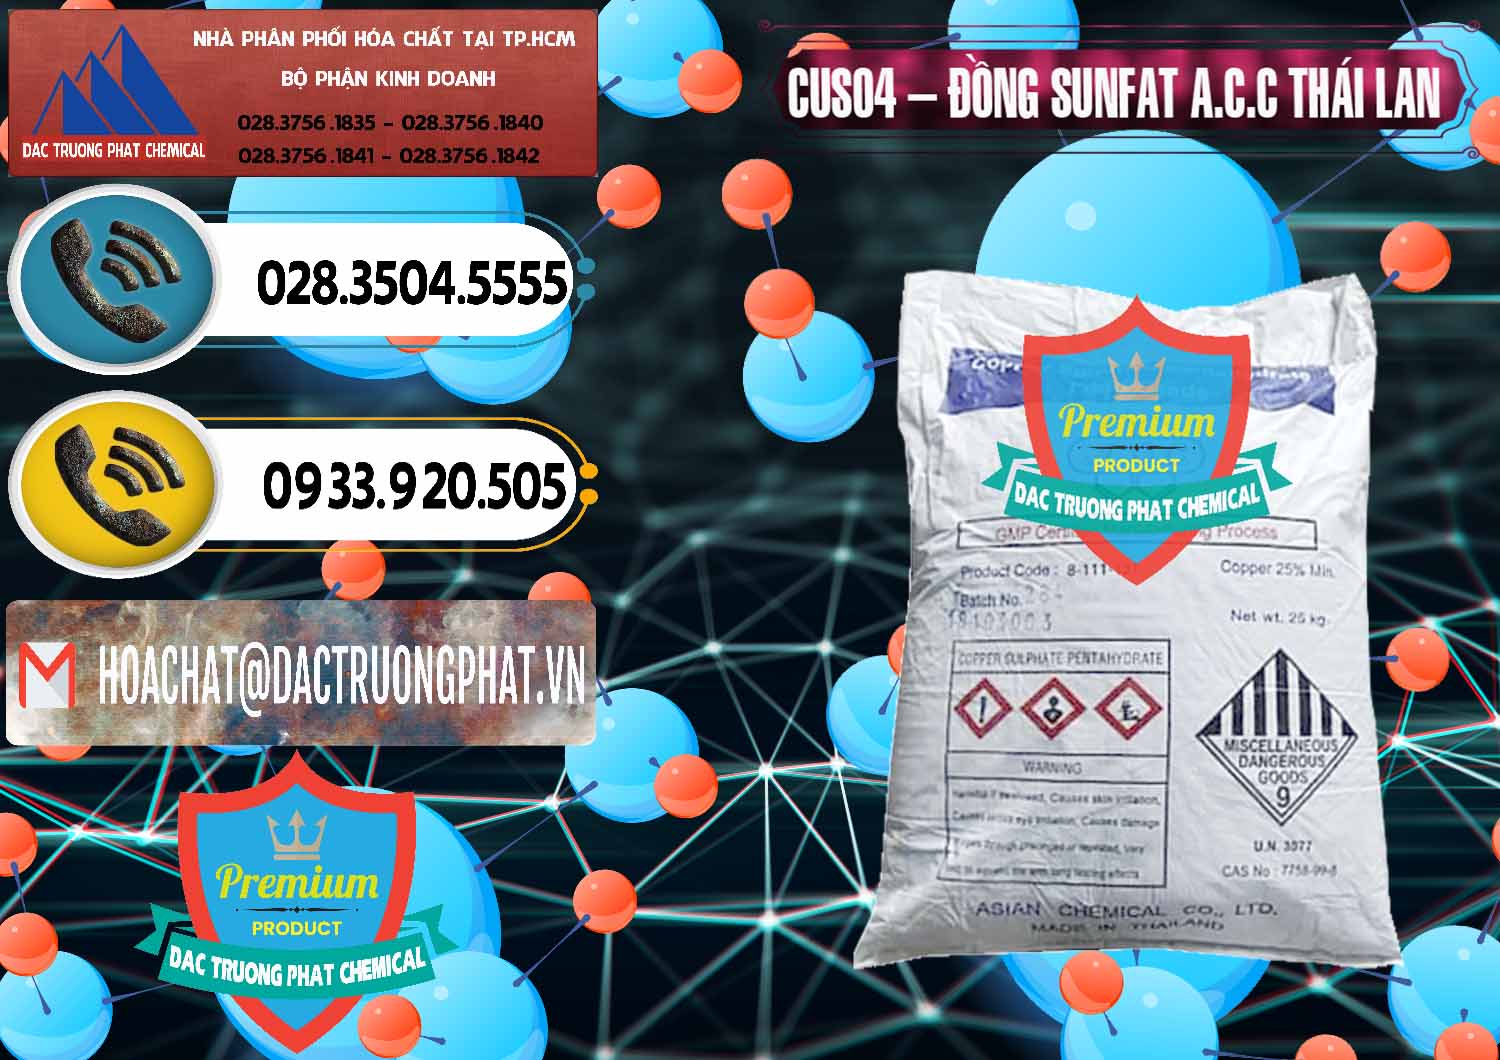 Nơi chuyên bán ( cung ứng ) CuSO4 – Đồng Sunfat A.C.C Thái Lan - 0249 - Nơi cung cấp & nhập khẩu hóa chất tại TP.HCM - hoachatdetnhuom.vn